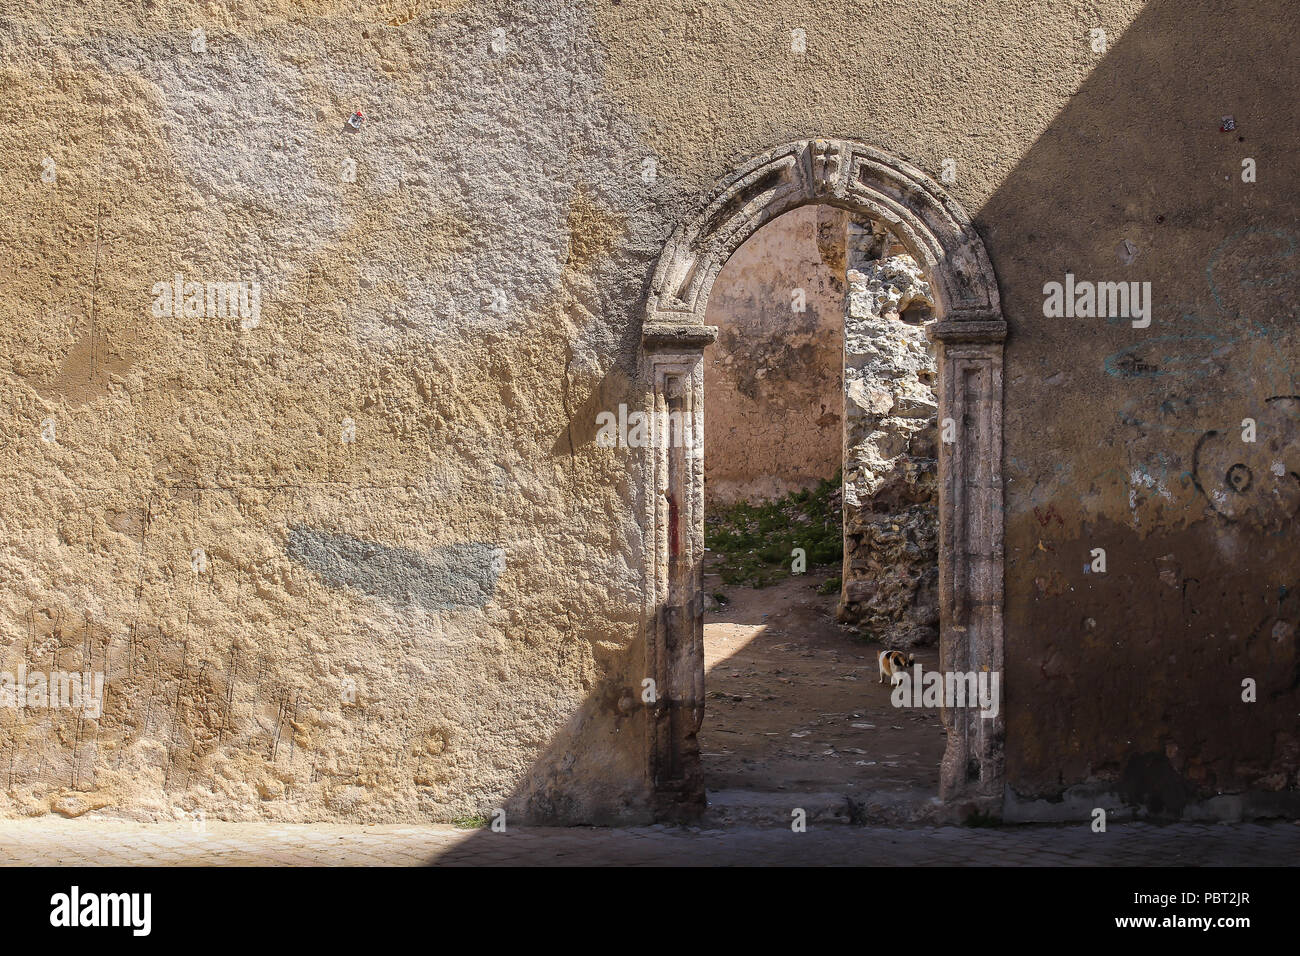 Patrimoine historique, la forteresse portugaise sur la côte de l'océan Atlantique. Porte dans le mur de fortification. El Jadida, Maroc. Banque D'Images